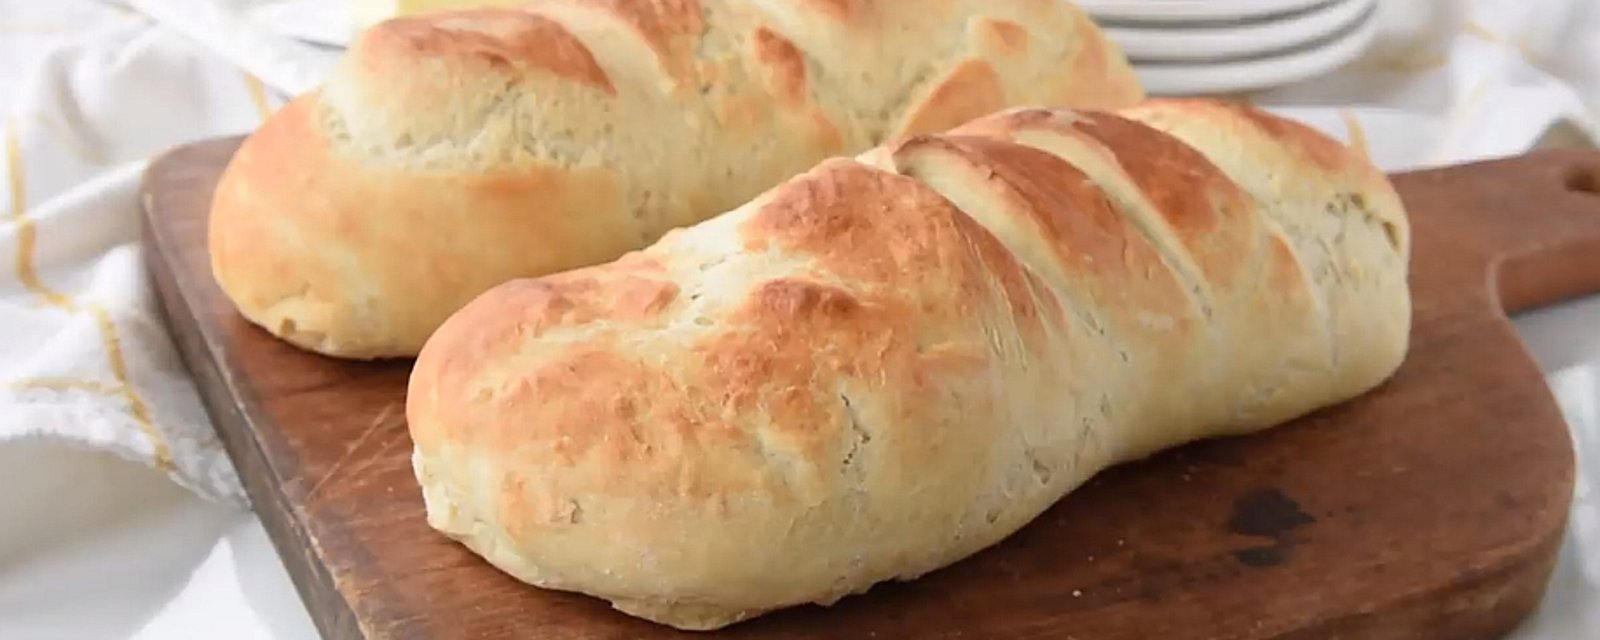 Confectionnez un pain français à la maison facilement et sans machine à pain